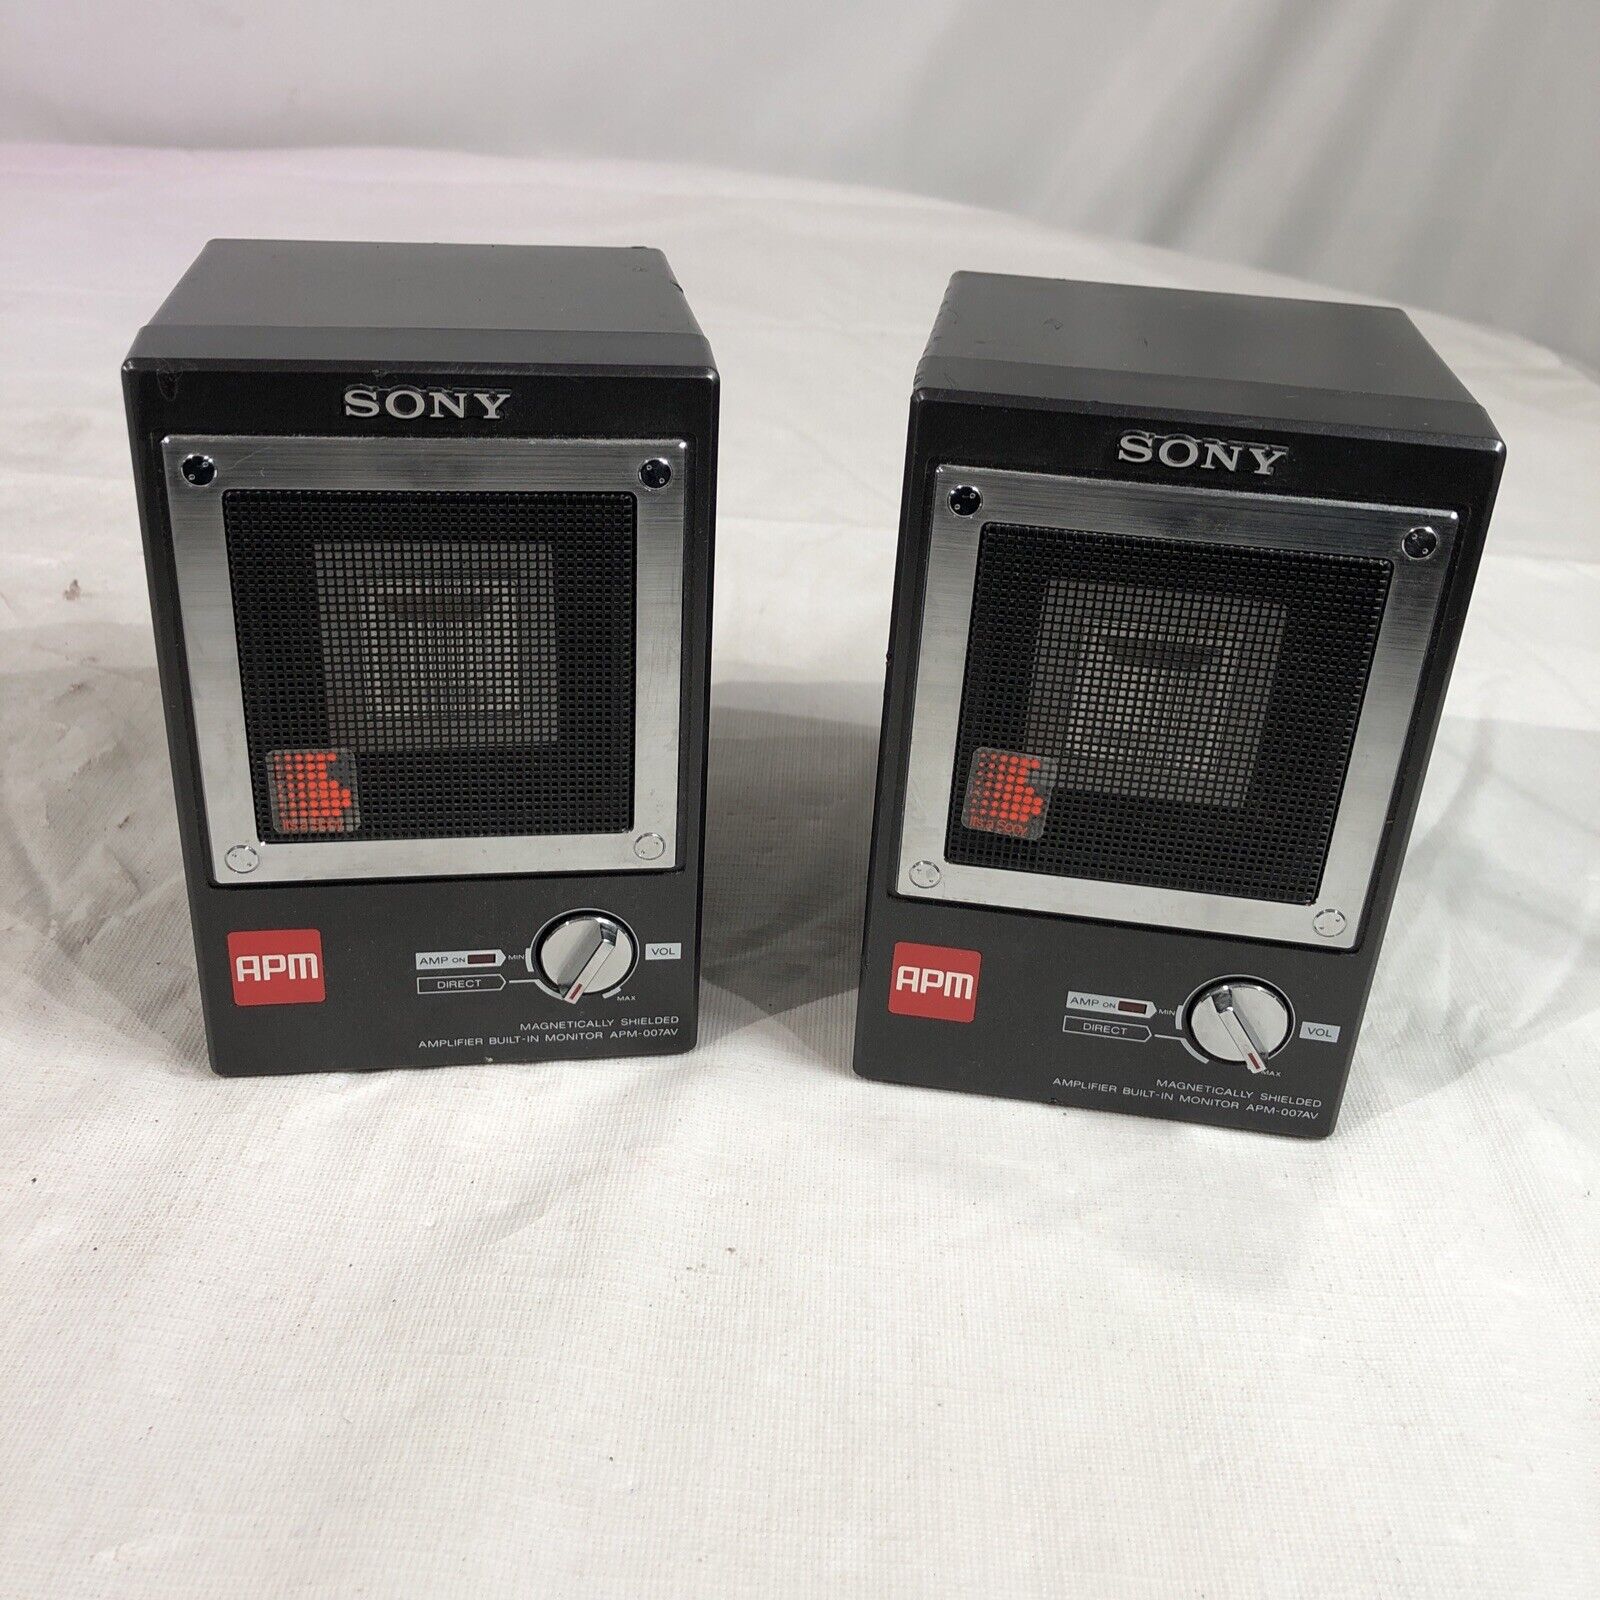 SONY APM-007 AV Speaker Monitors